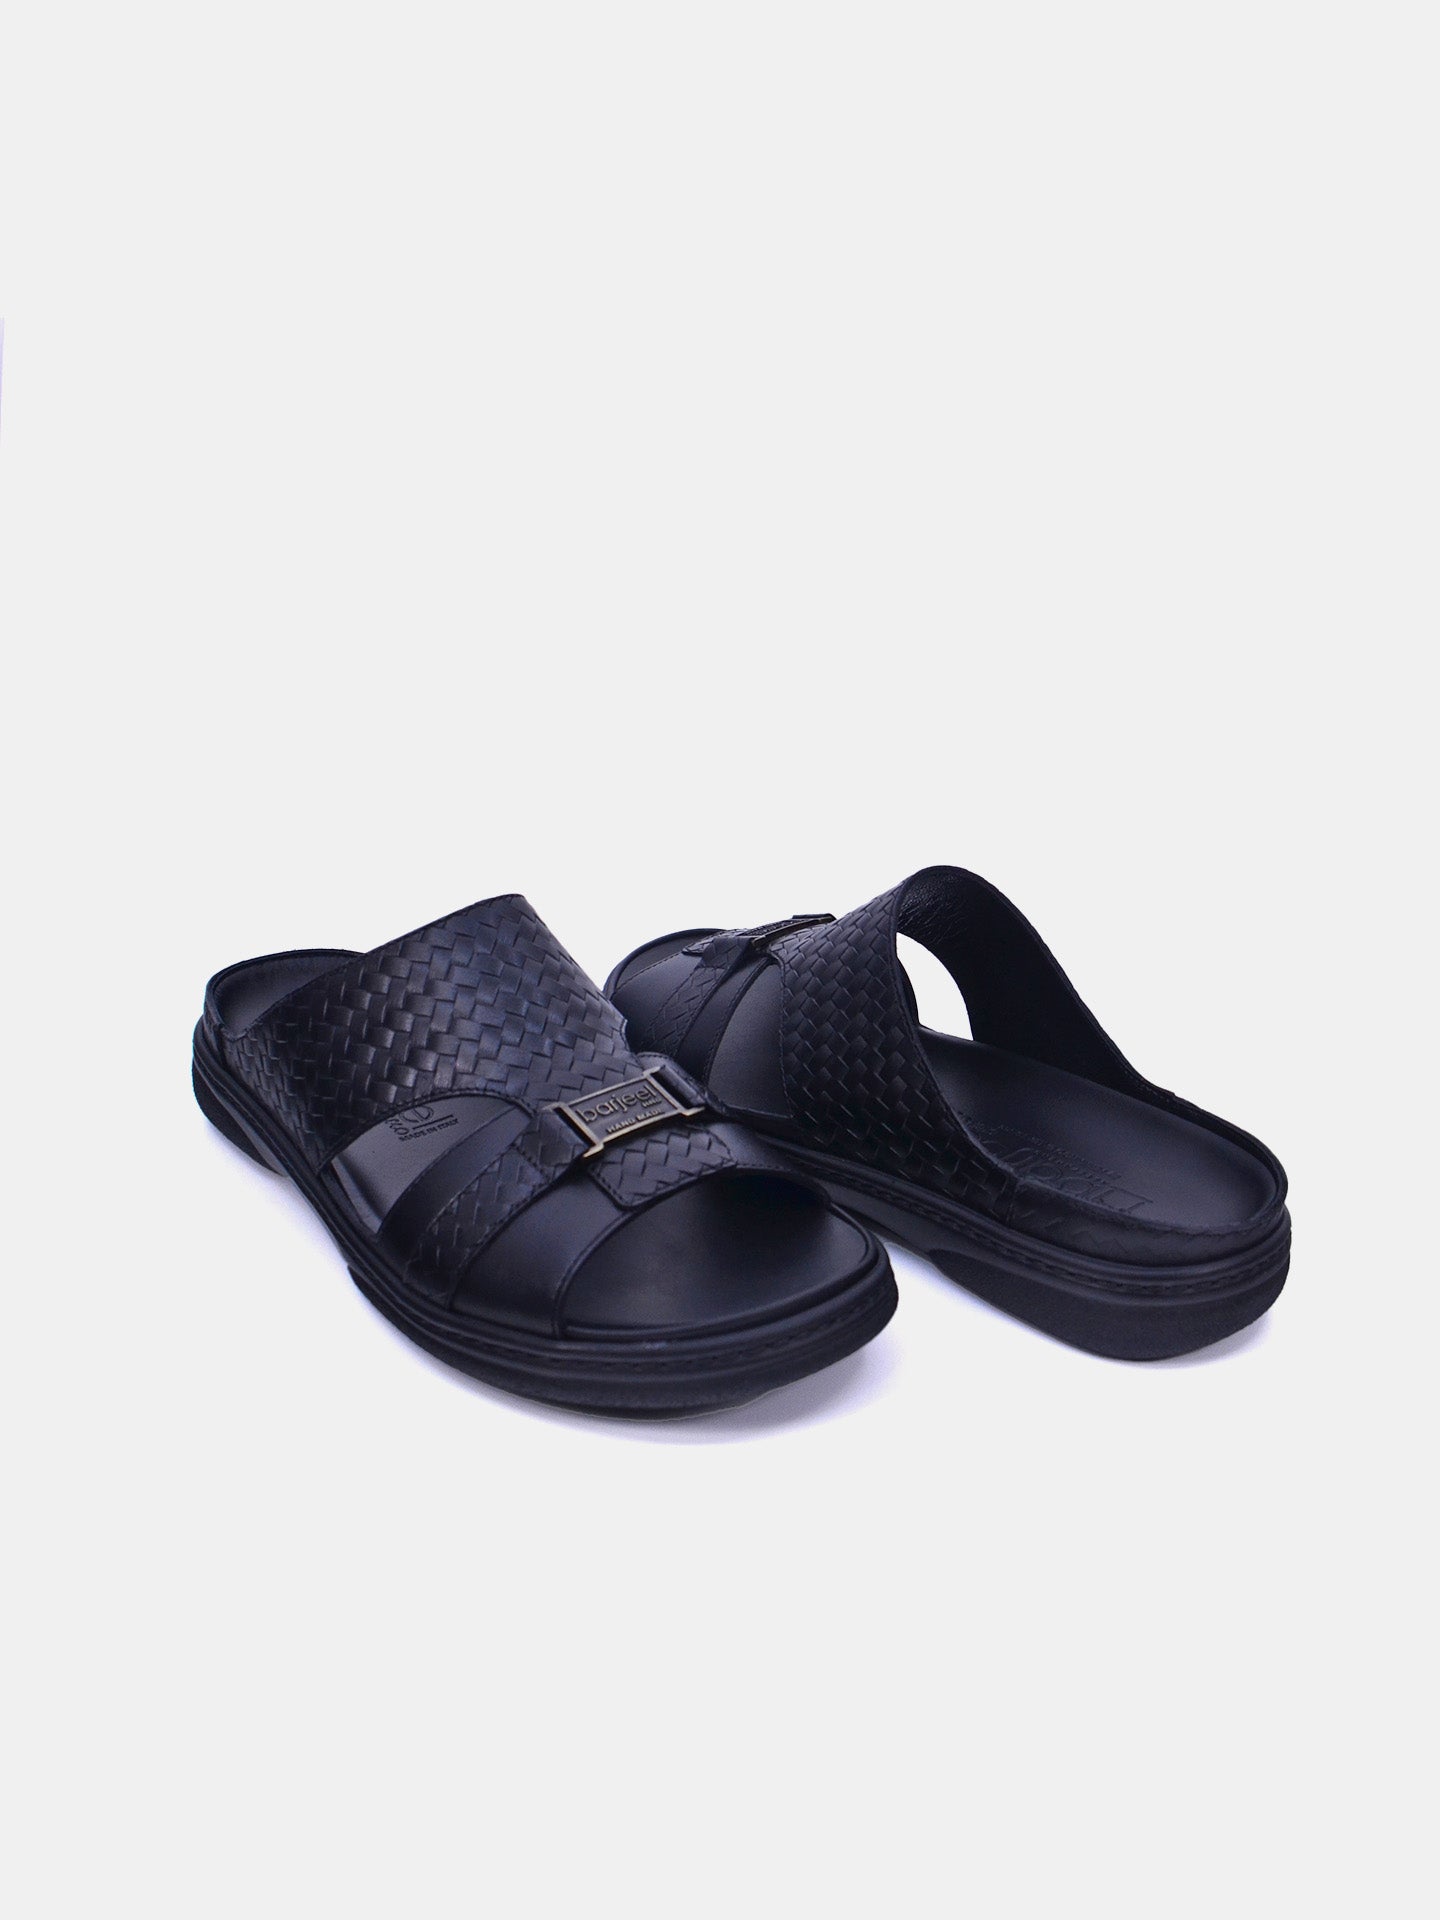 Barjeel Uno 2372 Men's Arabic Sandals #color_Black